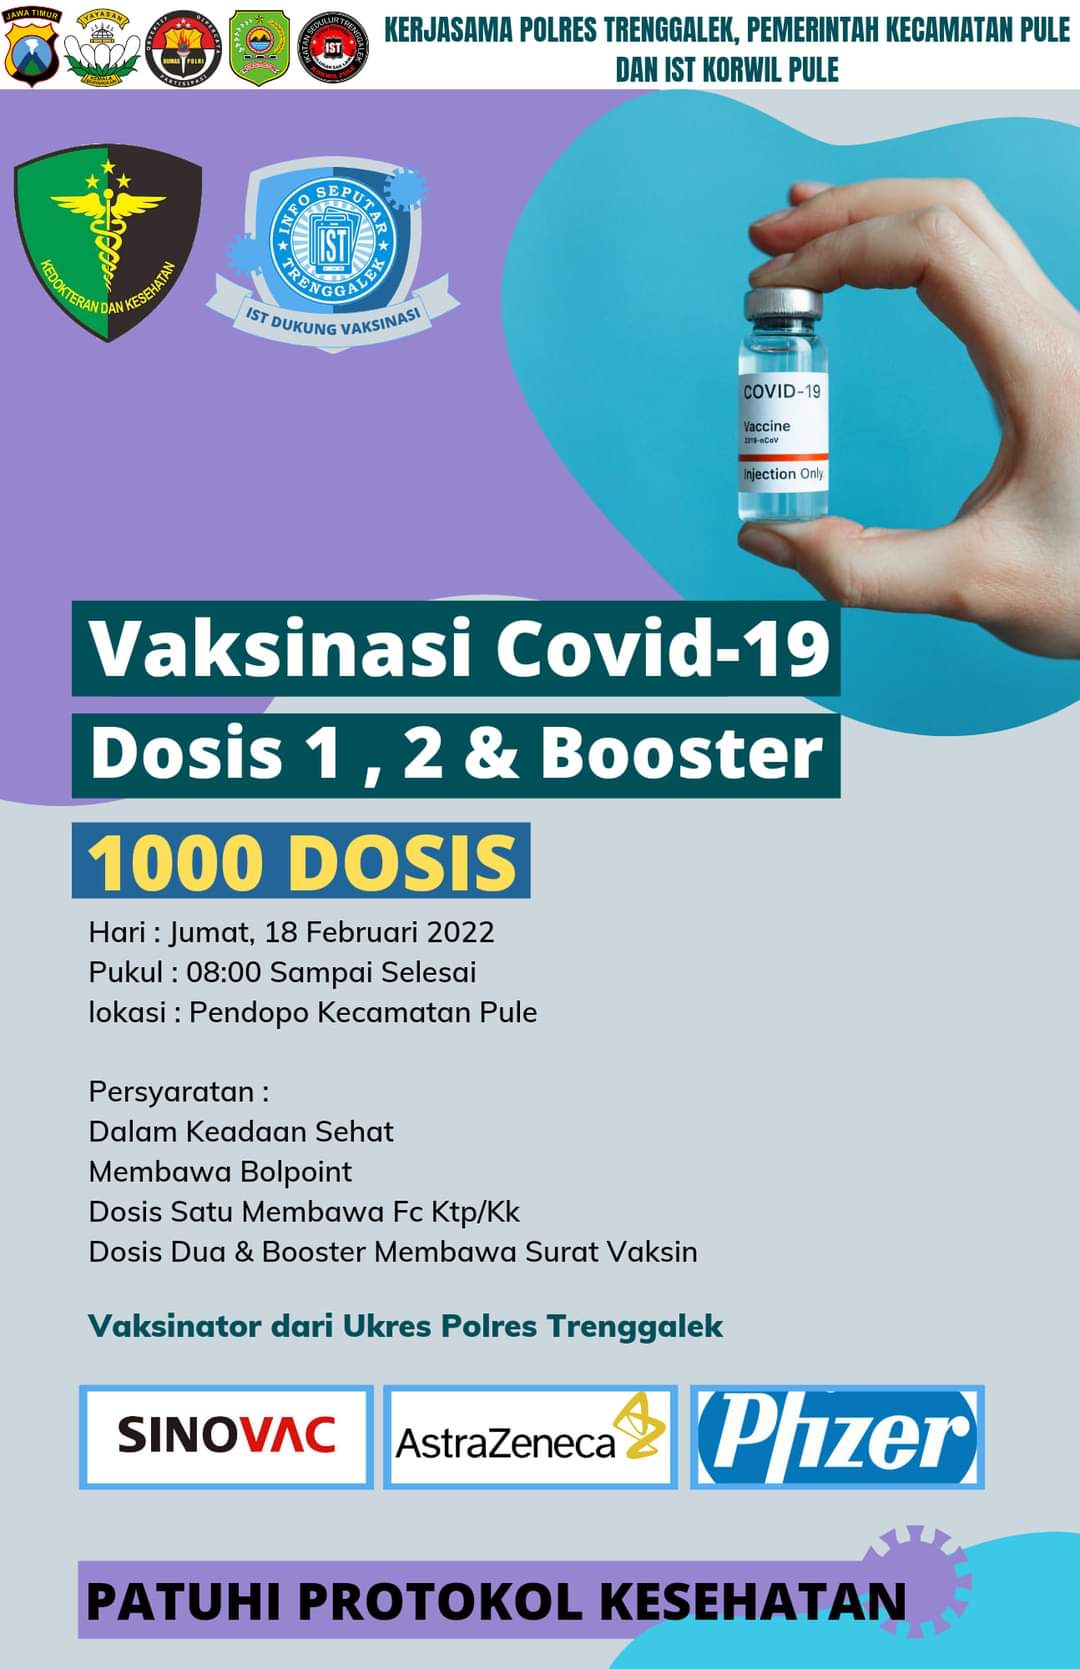 Jadwal Vaksin Covid-19 Trenggalek, 18 Februari 2022